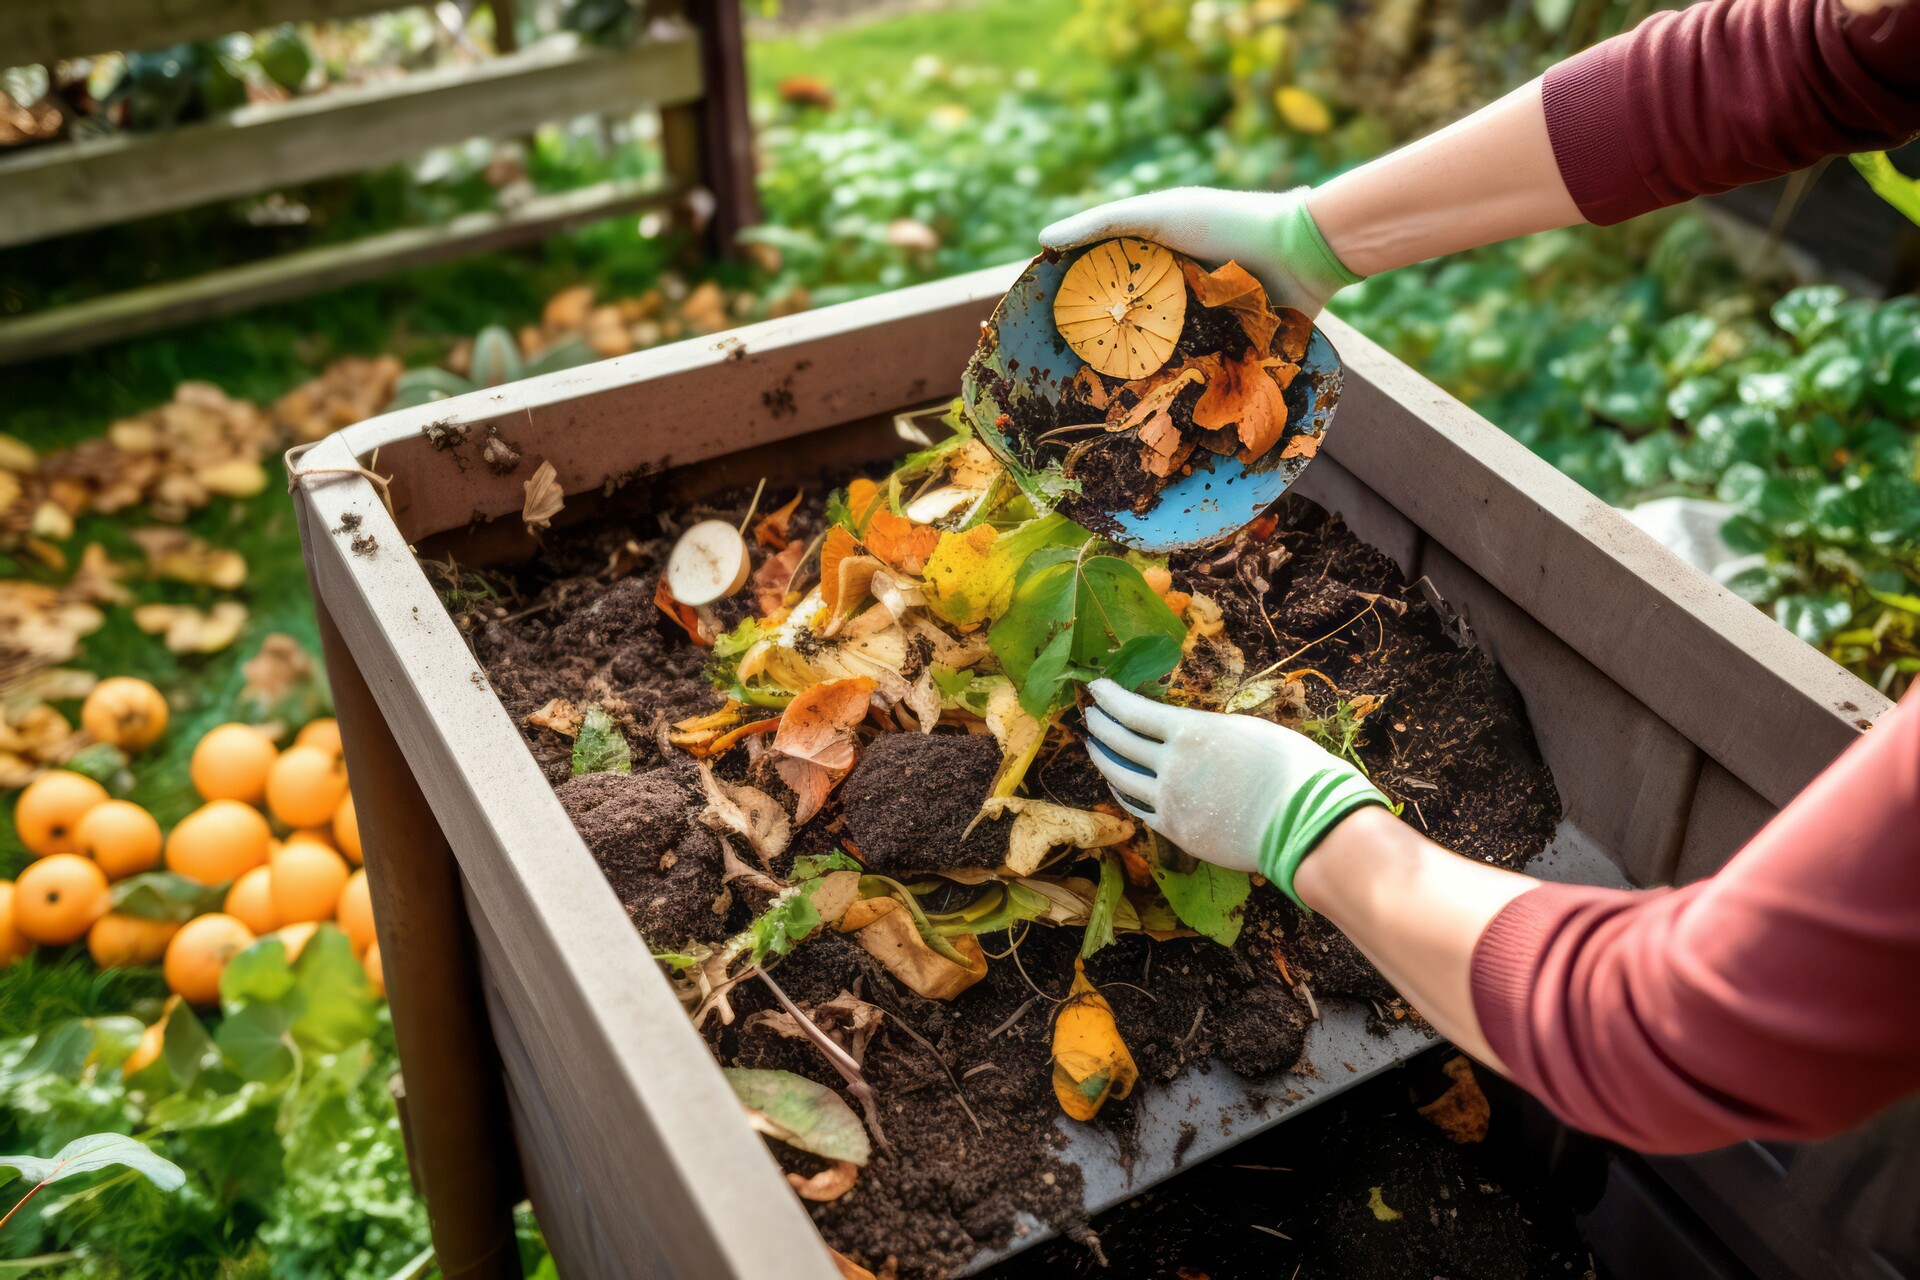 Na tym obrazku widzimy stos kompostu do warzyw, złożony z różnorodnych organicznych składników, takich jak resztki roślinne i gnój zwierzęcy, starannie rozłożony na glebie przygotowanej do uprawy warzyw. Jego bogaty, ciemny kolor i struktura świadczą o wysokiej jakości i dojrzałości kompostu. Ta grafika ilustruje znaczenie kompostu do warzyw jako naturalnego nawozu, który zapewnia składniki odżywcze, poprawia strukturę gleby i stymuluje zdrowy wzrost roślin, przyczyniając się do obfitych i zdrowych plonów